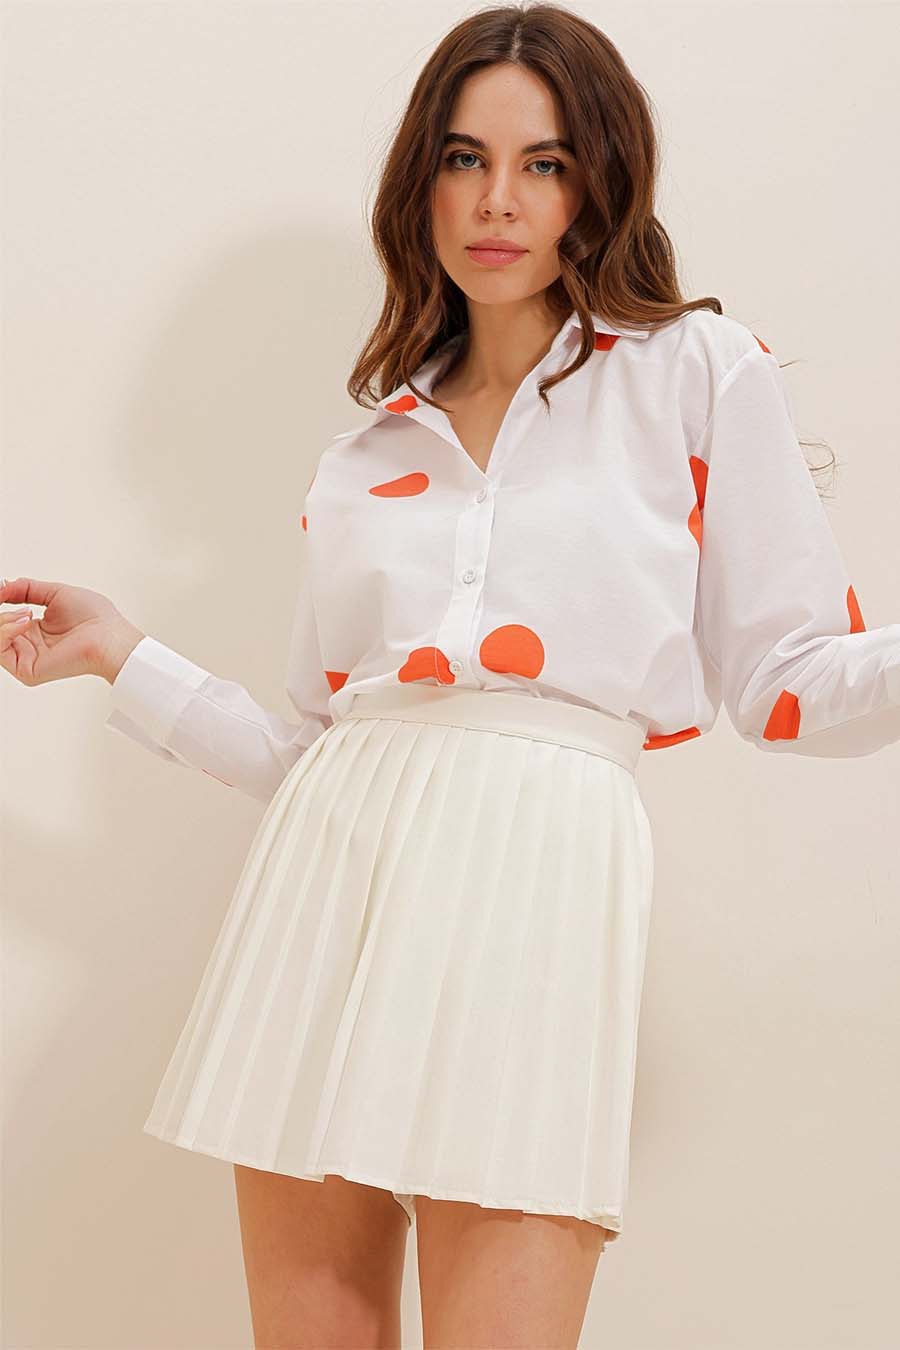 Γυναικείο πουκάμισο Millie, Λευκό/Πορτοκάλι 4